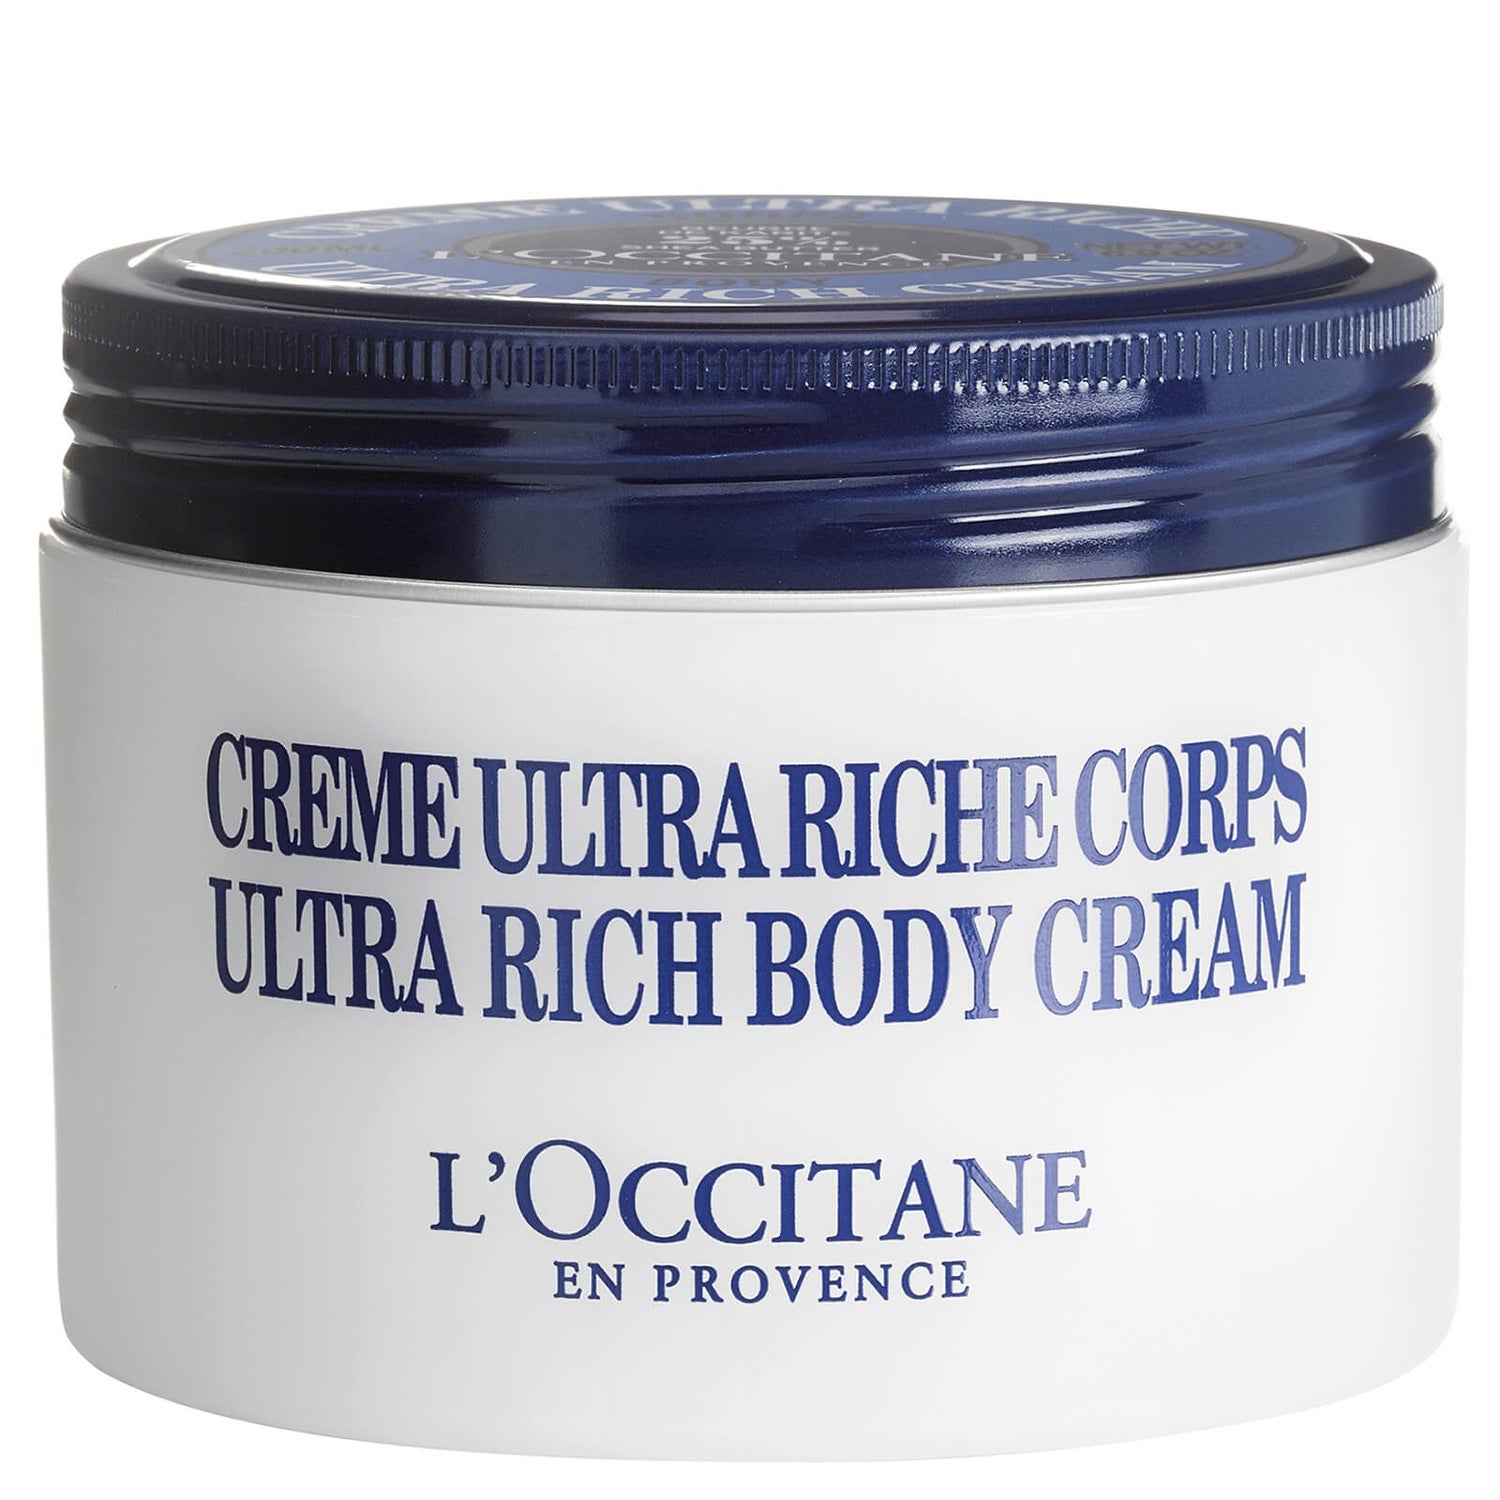 L'Occitane Shea Butter Ultra Rich Body Cream (200ml)